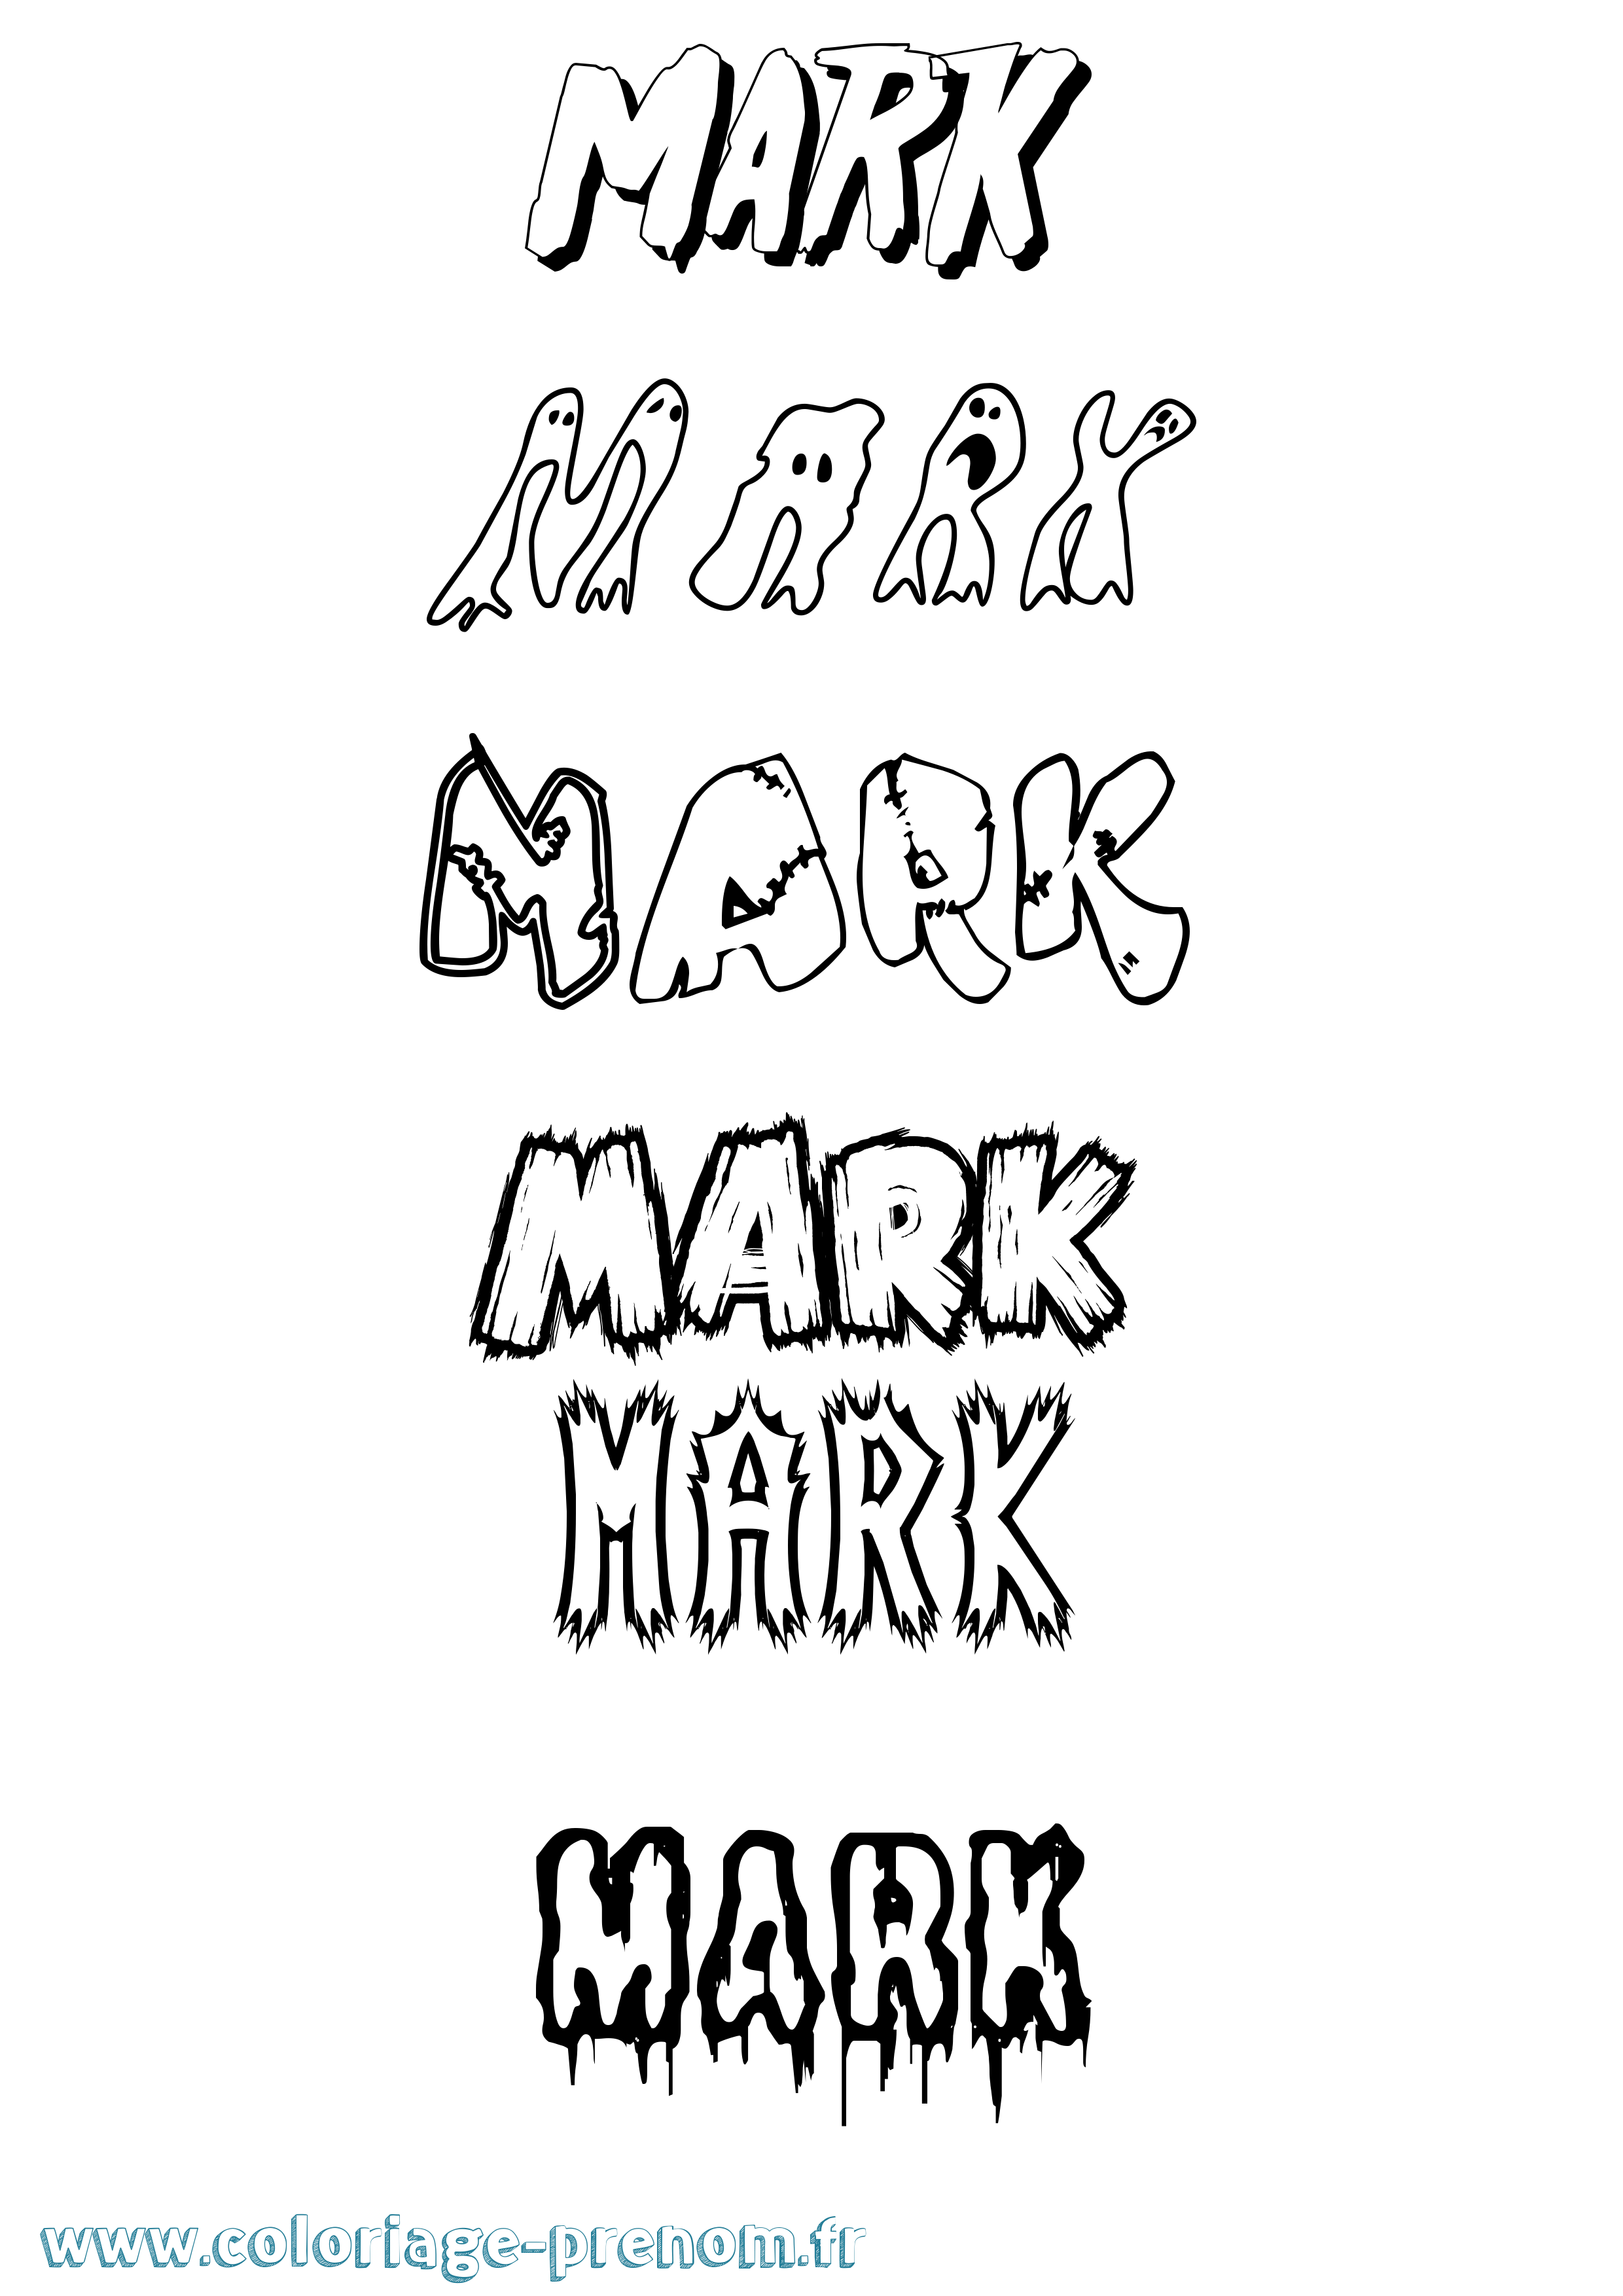 Coloriage prénom Mark Frisson